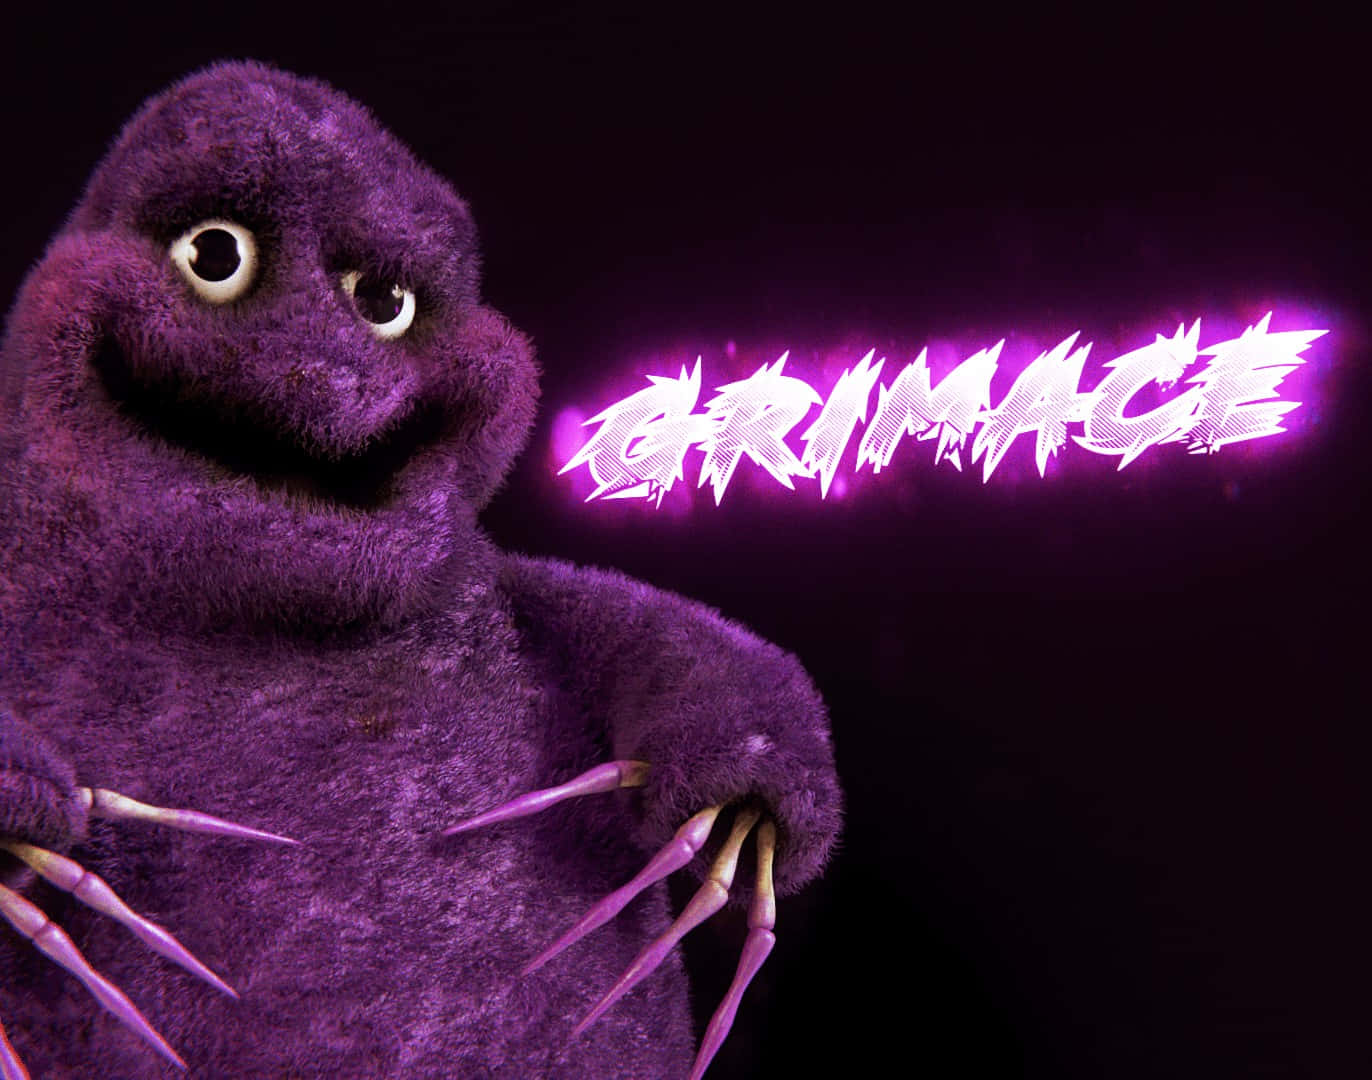 Purple Monster Grimace Illustration Background